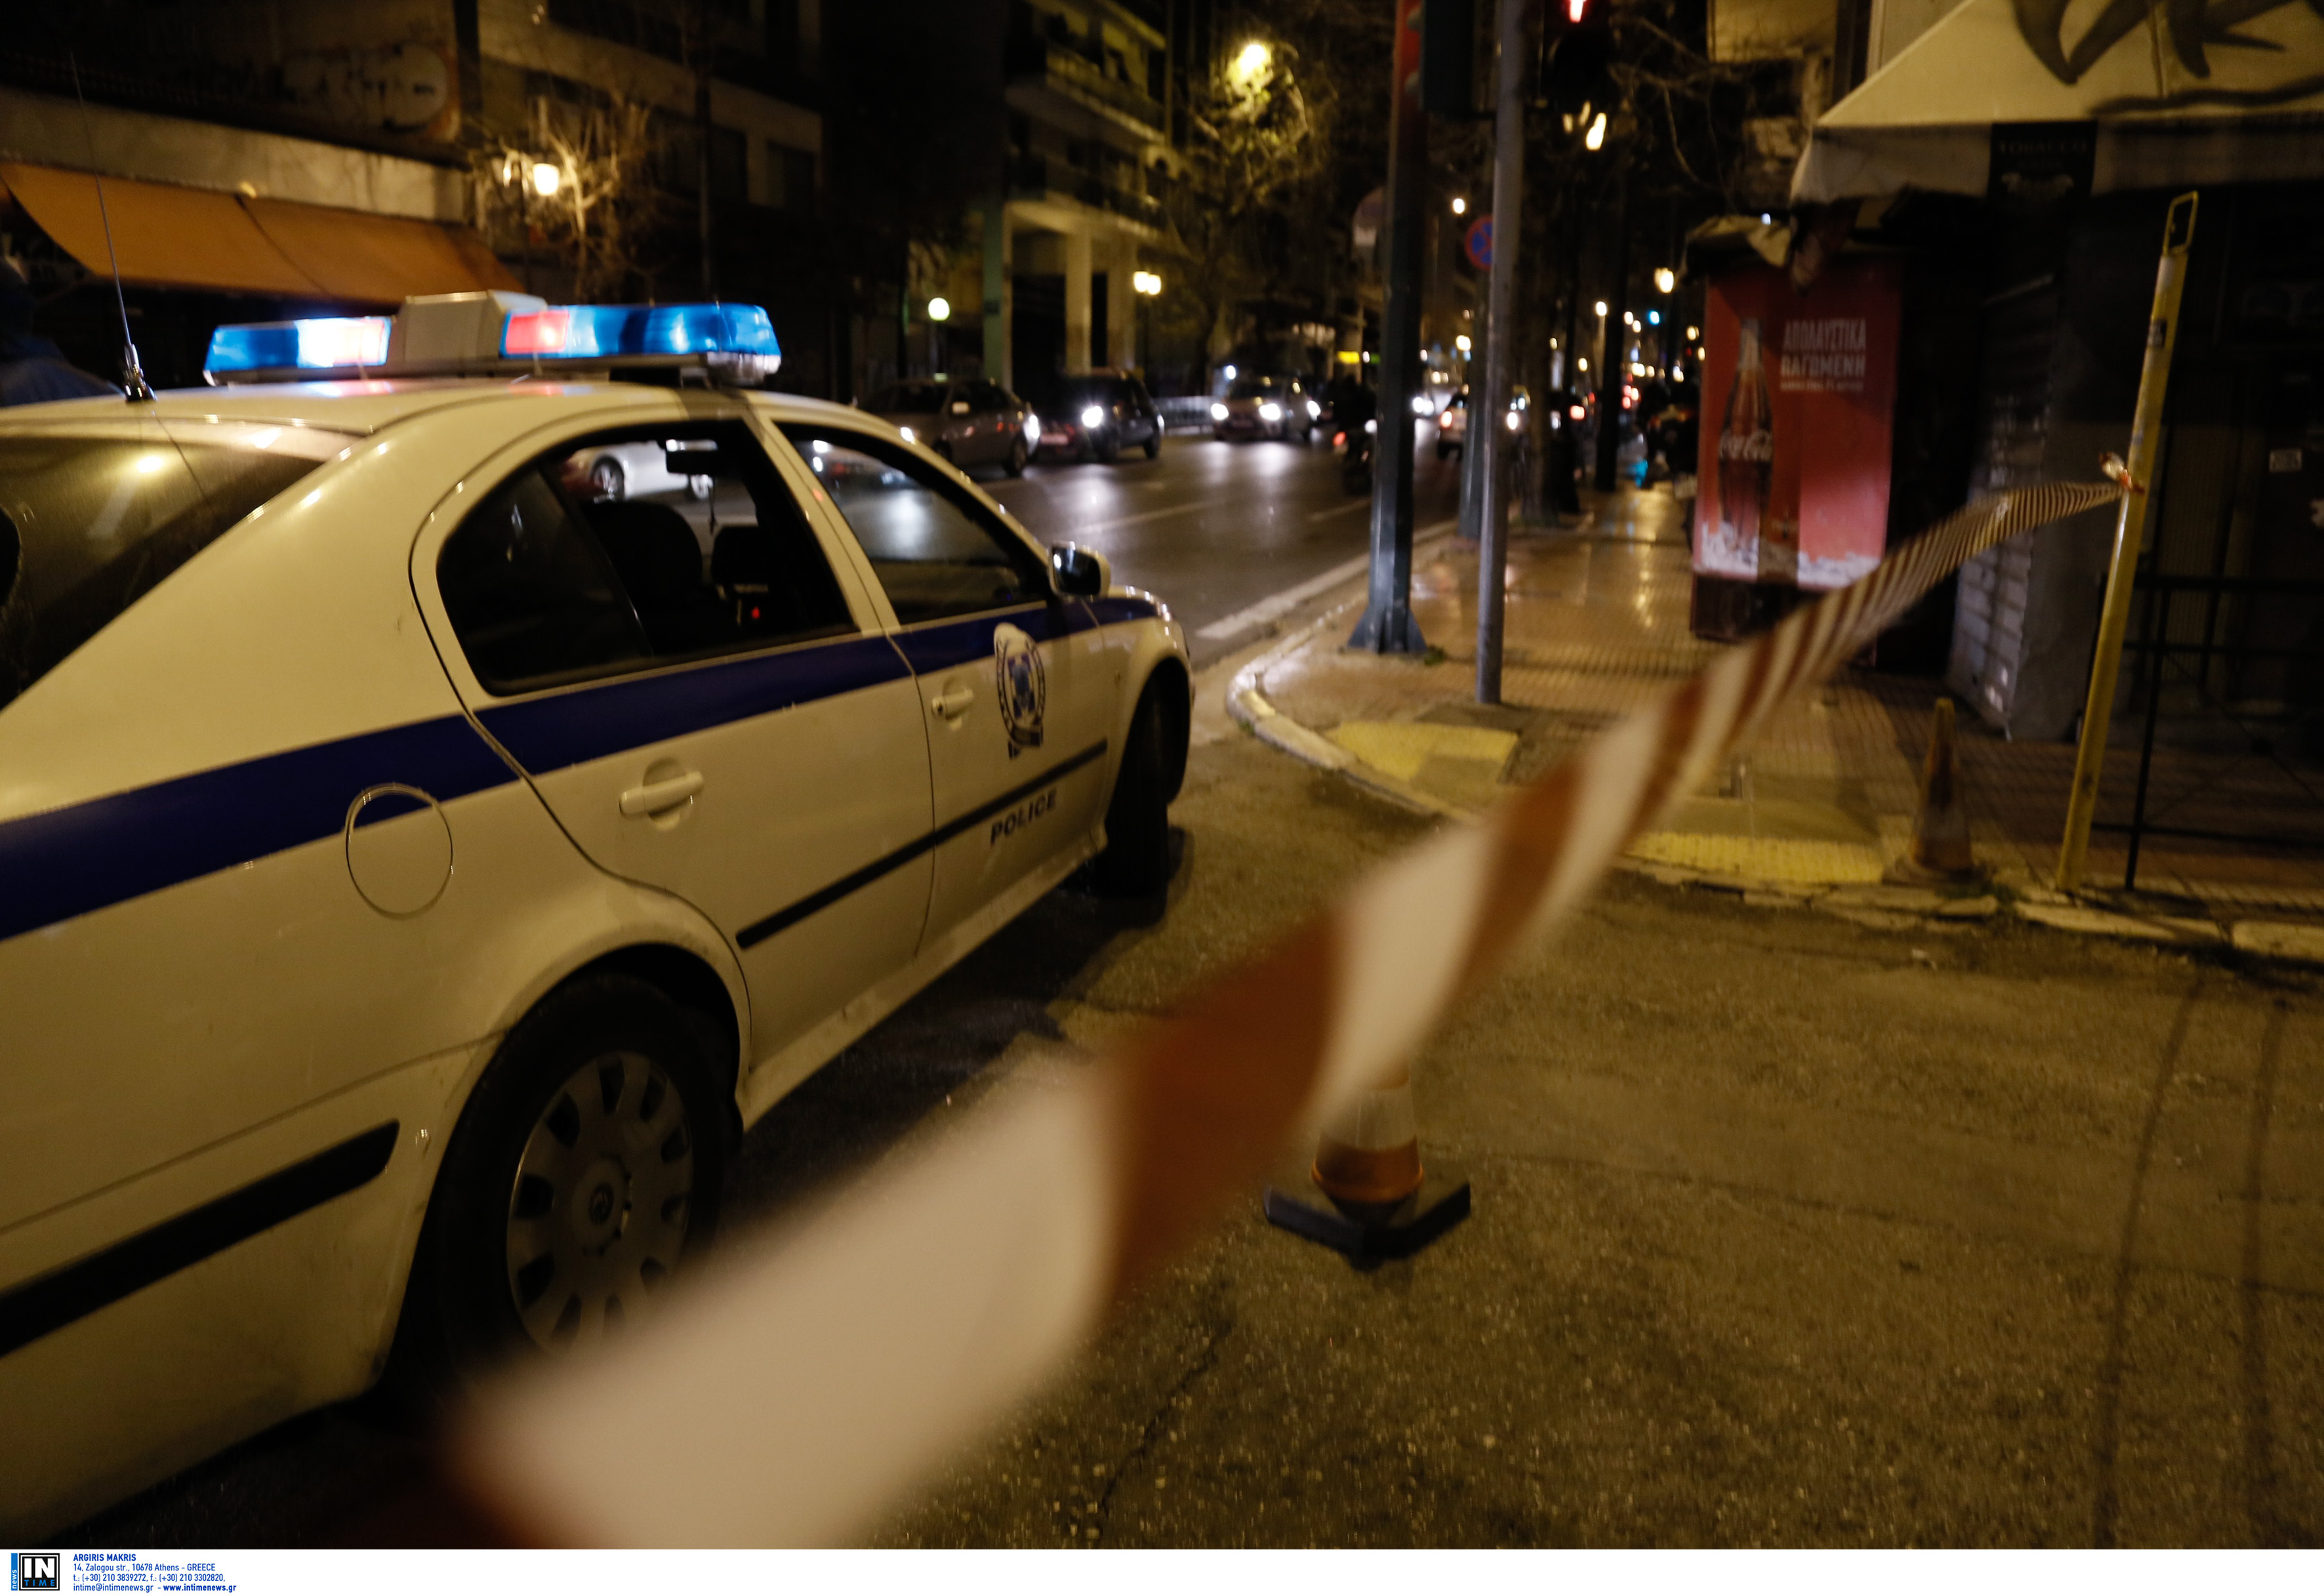 Θεσσαλονίκη: Ο ληστής περίμενε το σχόλασμα! Έβγαλε όπλο και βούτηξε τα χρήματα από το ταμείο